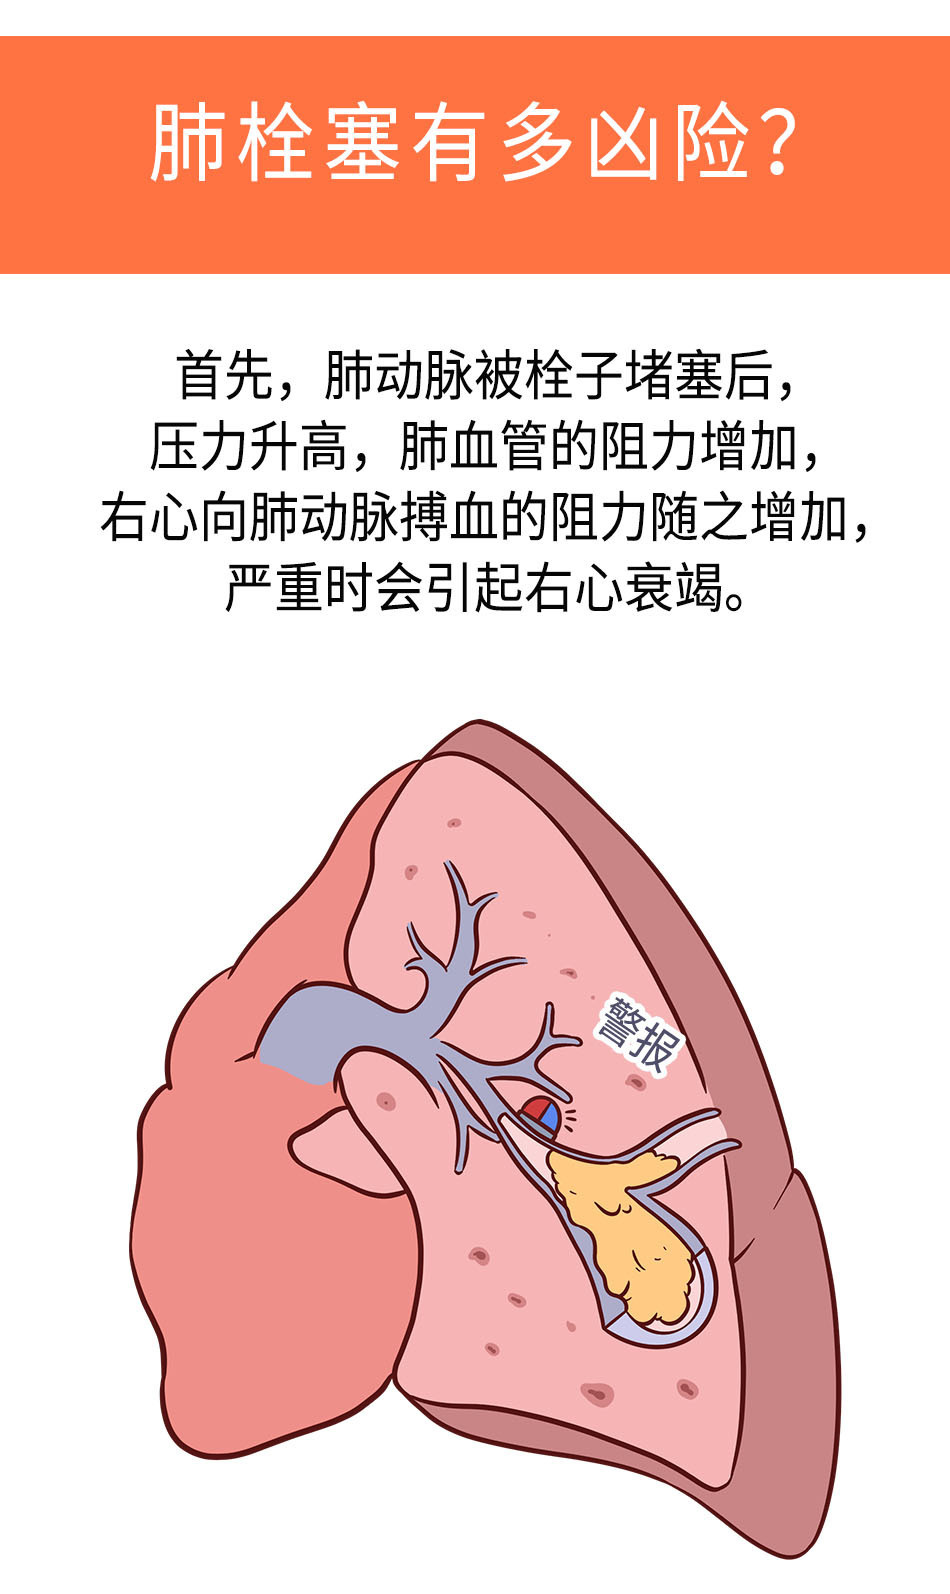 《棉签医学科普》北京安贞医院,急诊危重症中心,米玉红肺栓塞,肺部